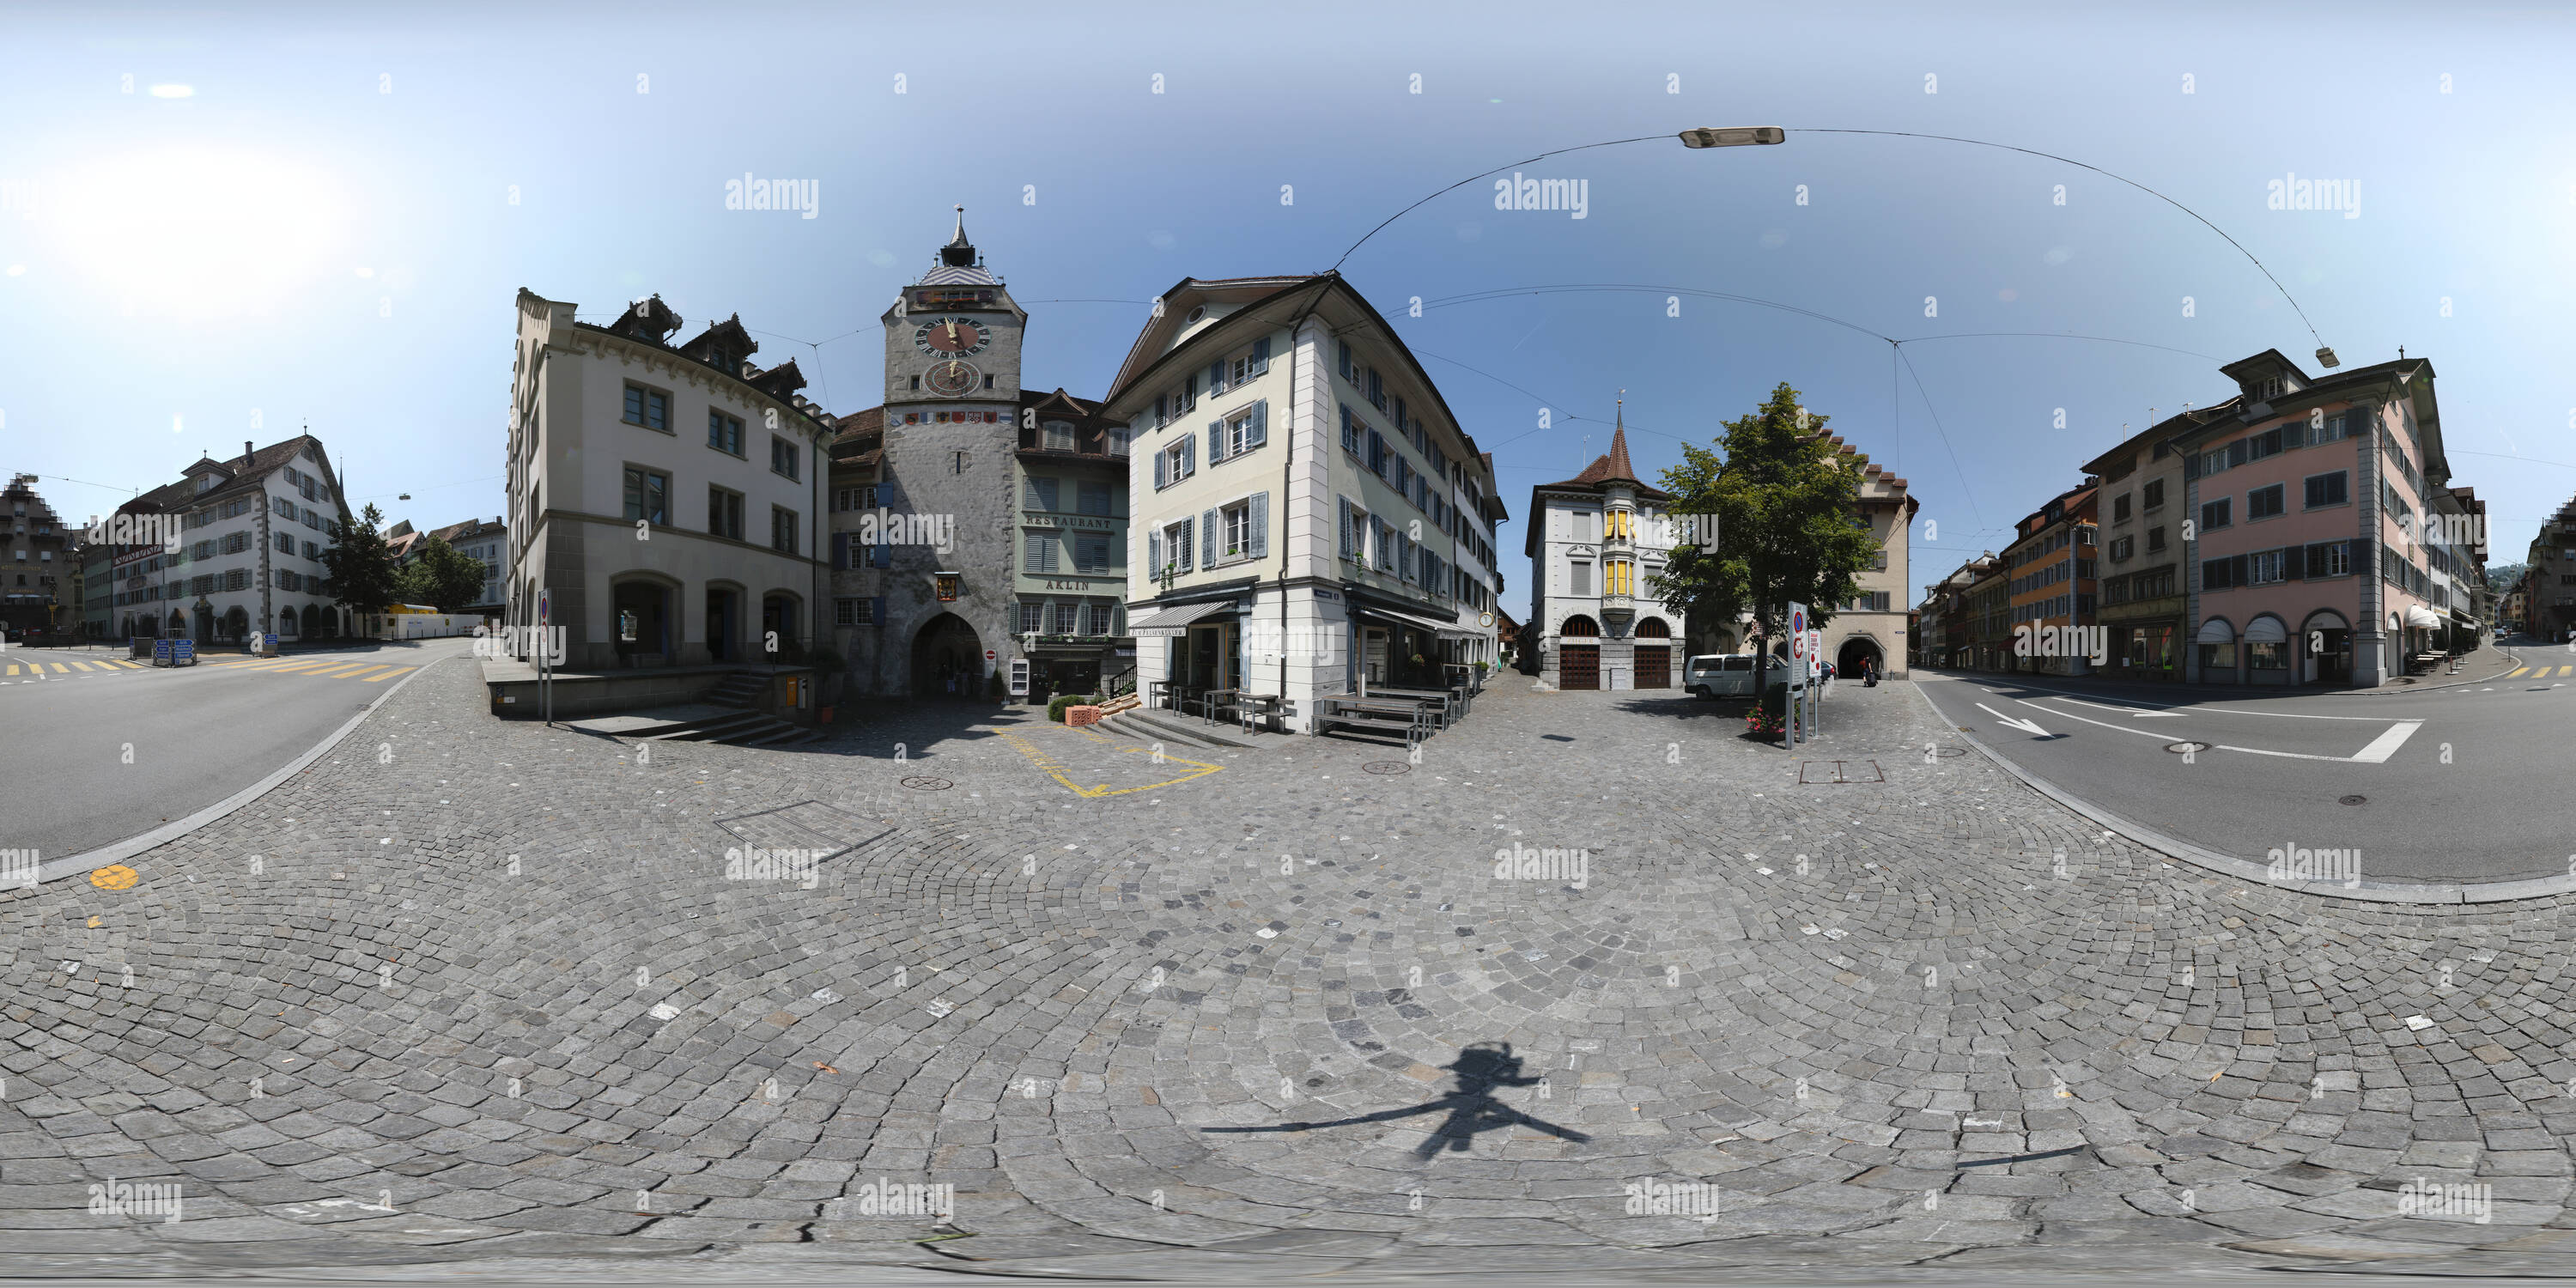 Visualizzazione panoramica a 360 gradi di Zugo Kolinplatz